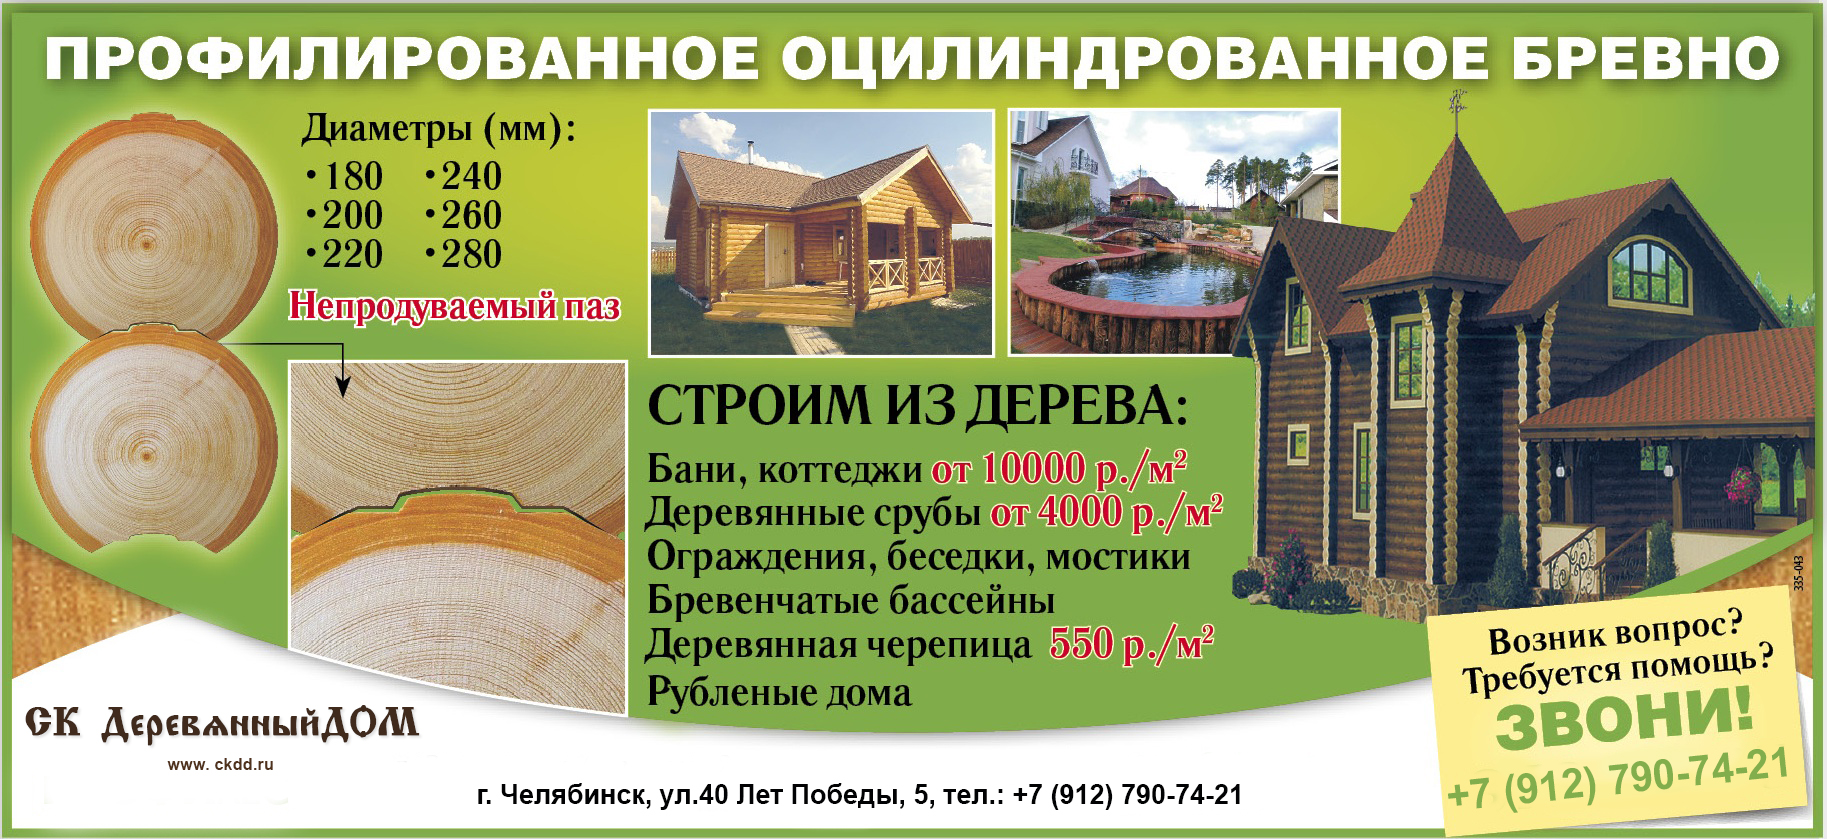 Статьи о строительстве деревянных домов